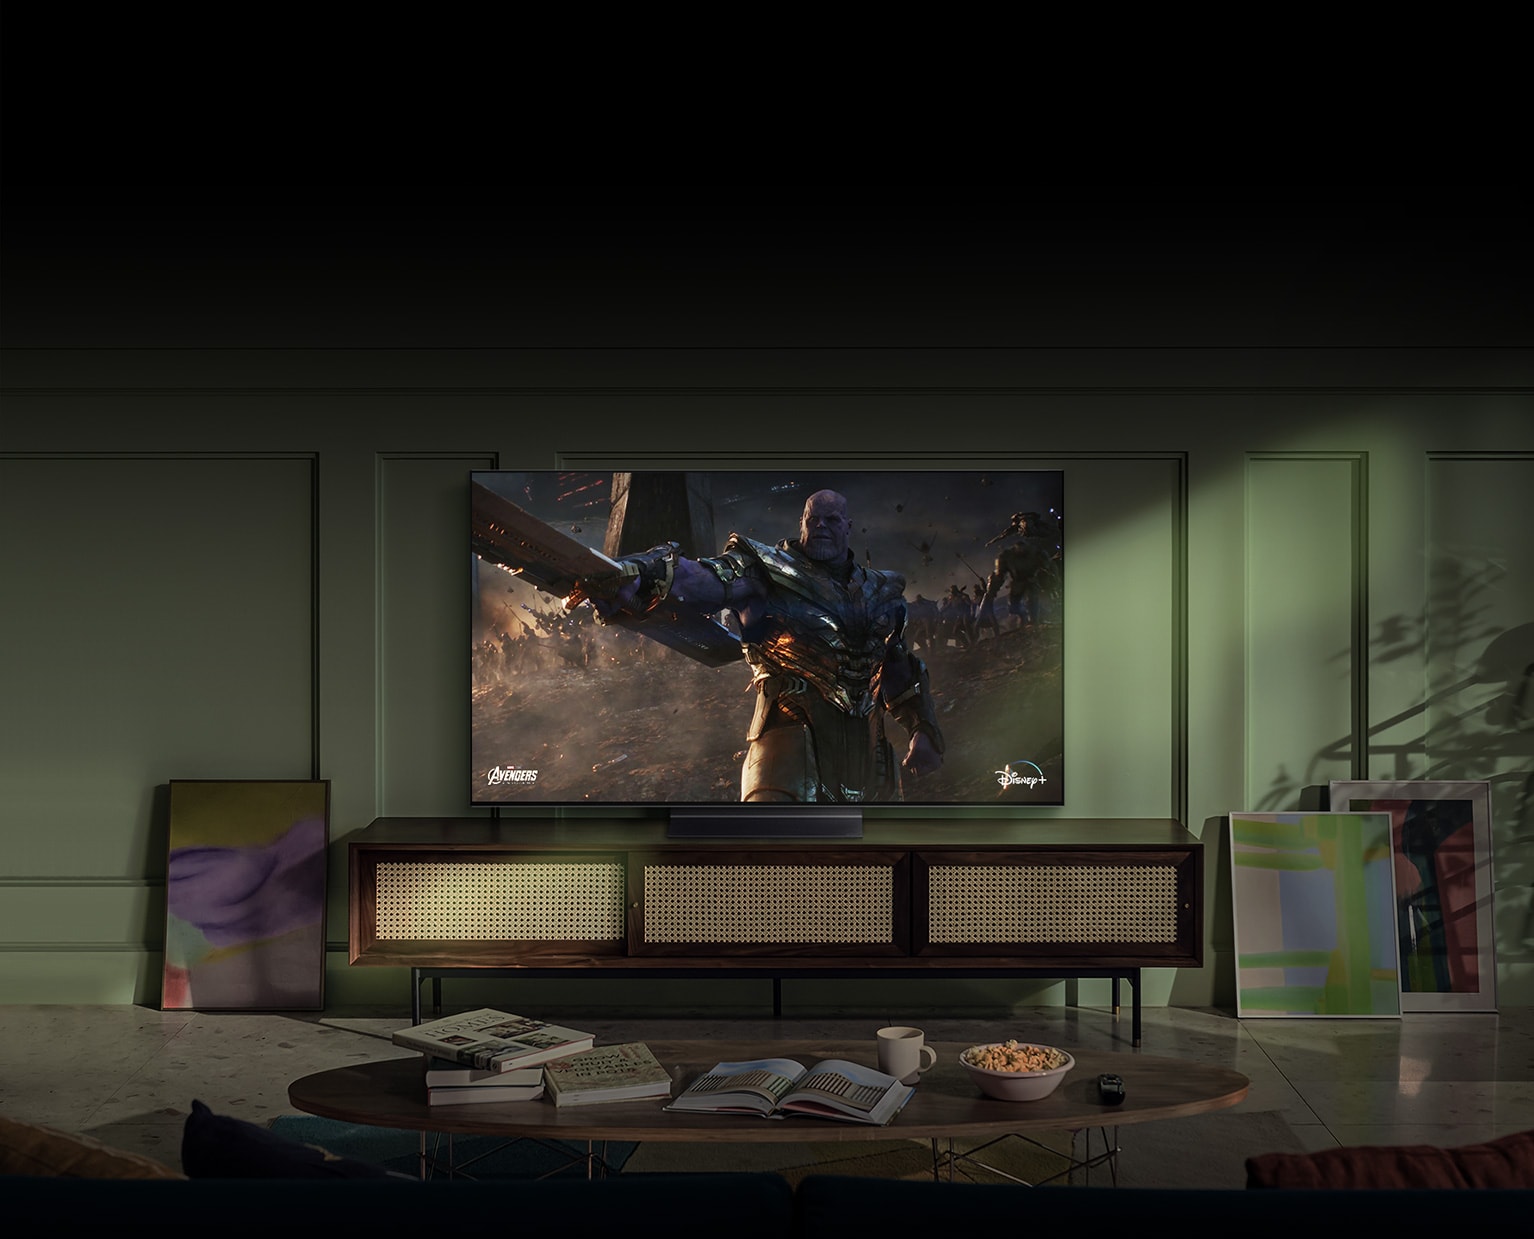 Een grote LG OLED tv aan de muur geeft een actiefilmscène weer